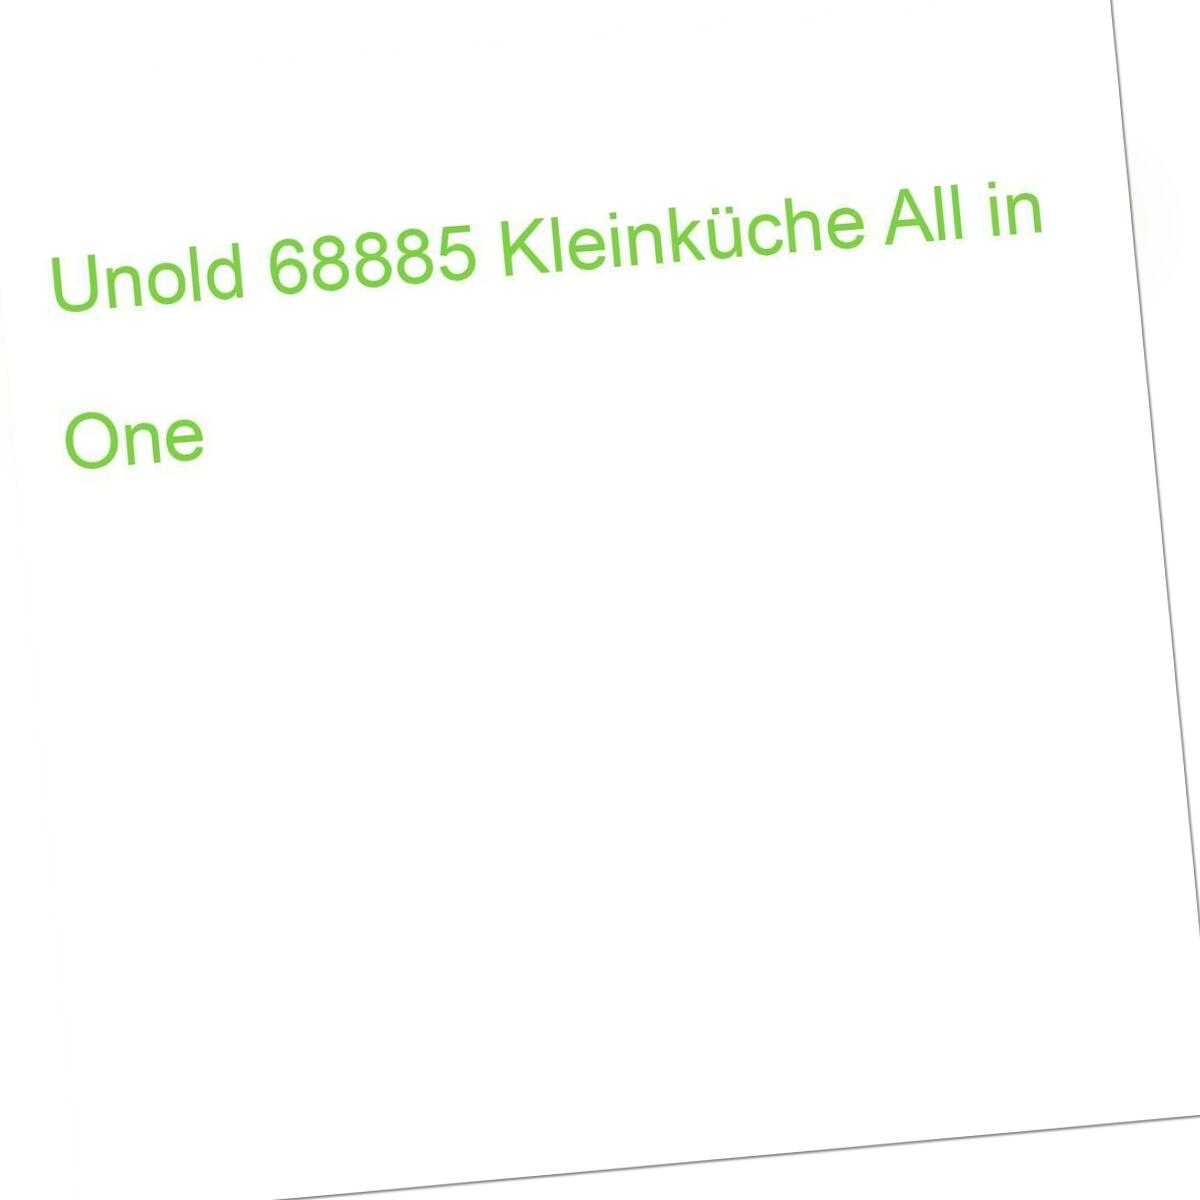 Kleinküche 68885 UNOLD in All (4011689688850) One